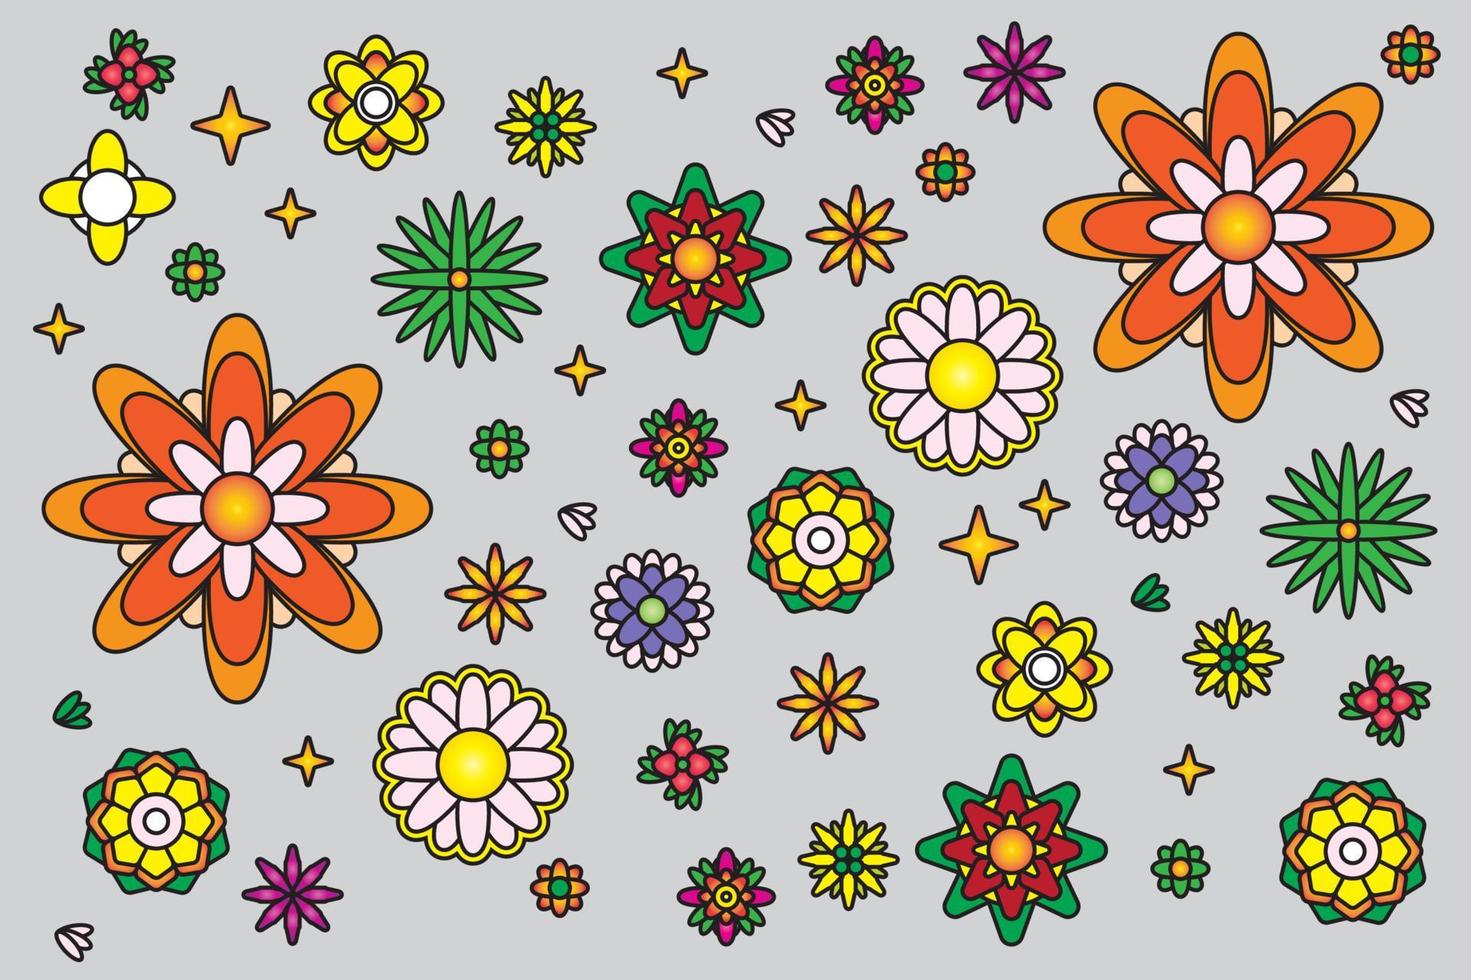 maravilloso flor pegatina paquete en de moda retro psicodélico dibujos animados vector estilo